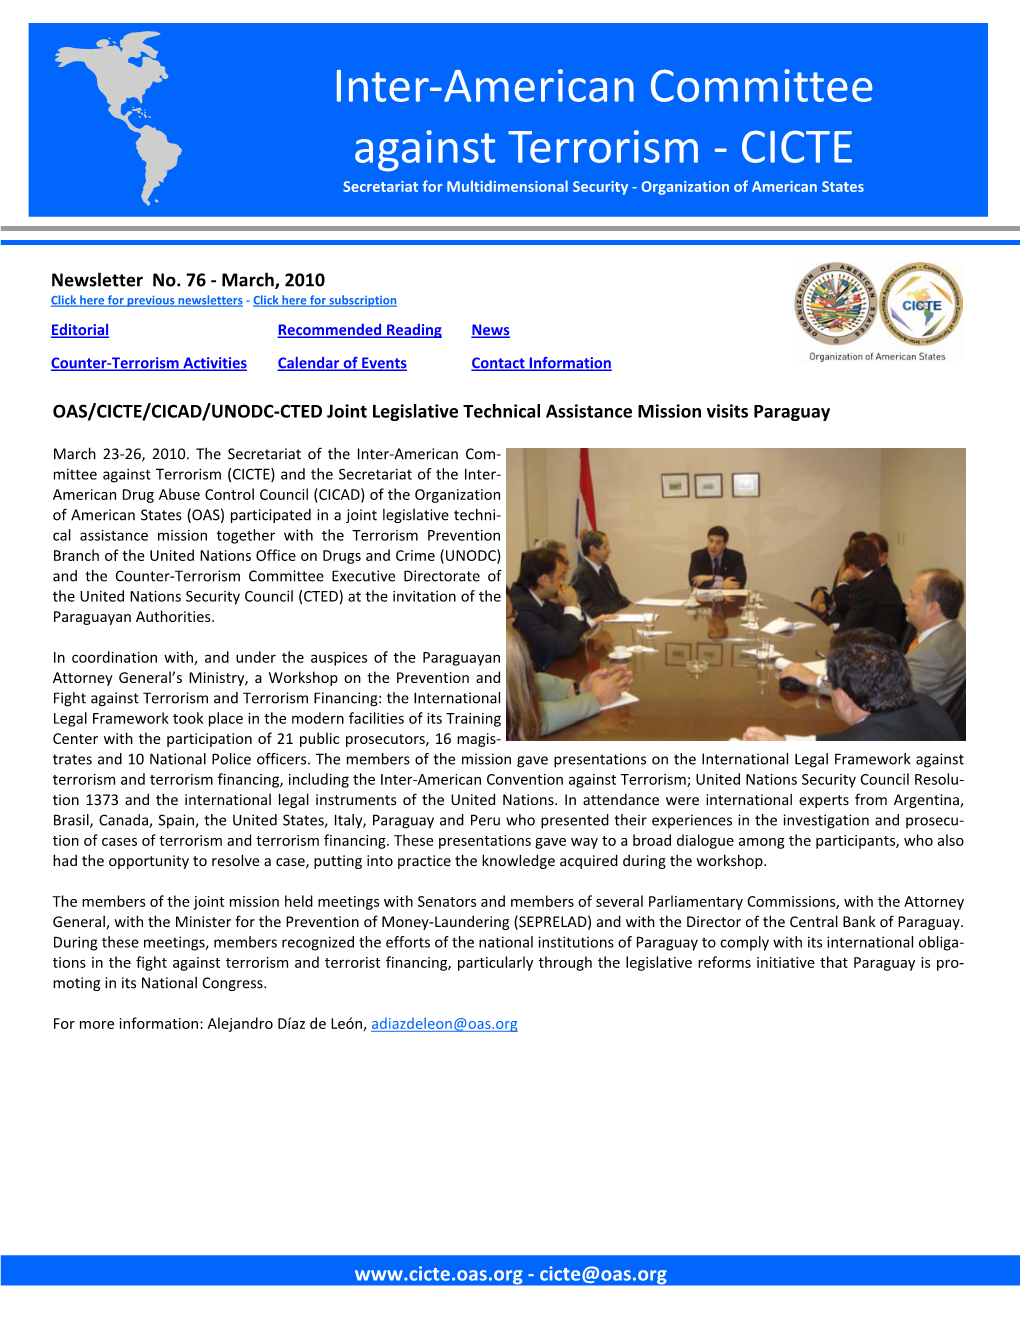 OAS/CICTE/CICAD/UNODC‐CTED Joint Legislative Technical Assistance Mission Visits Paraguay